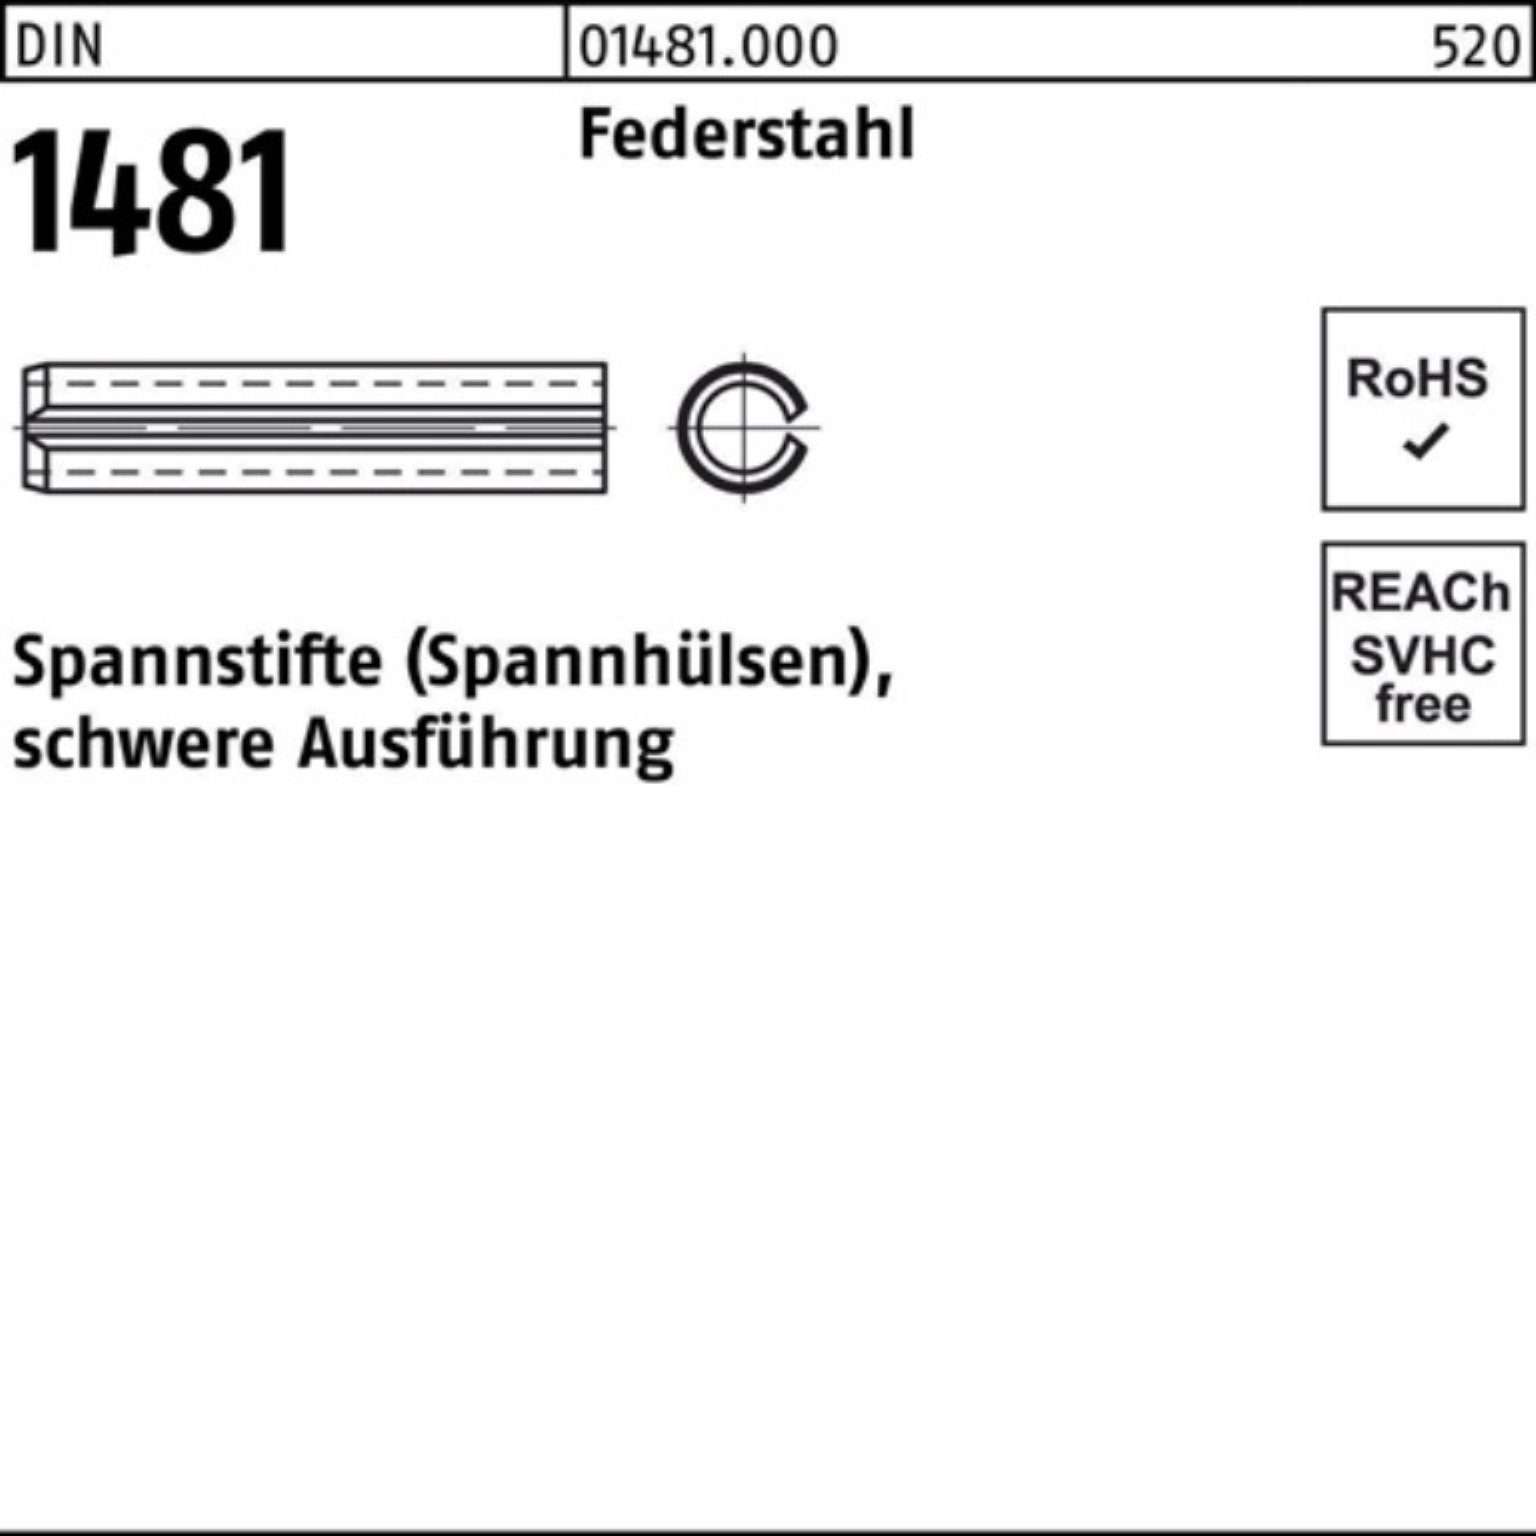 Reyher Spannstift 100er Pack Spannstift DIN 1481 13x 100 Federstahl schwere Ausführung